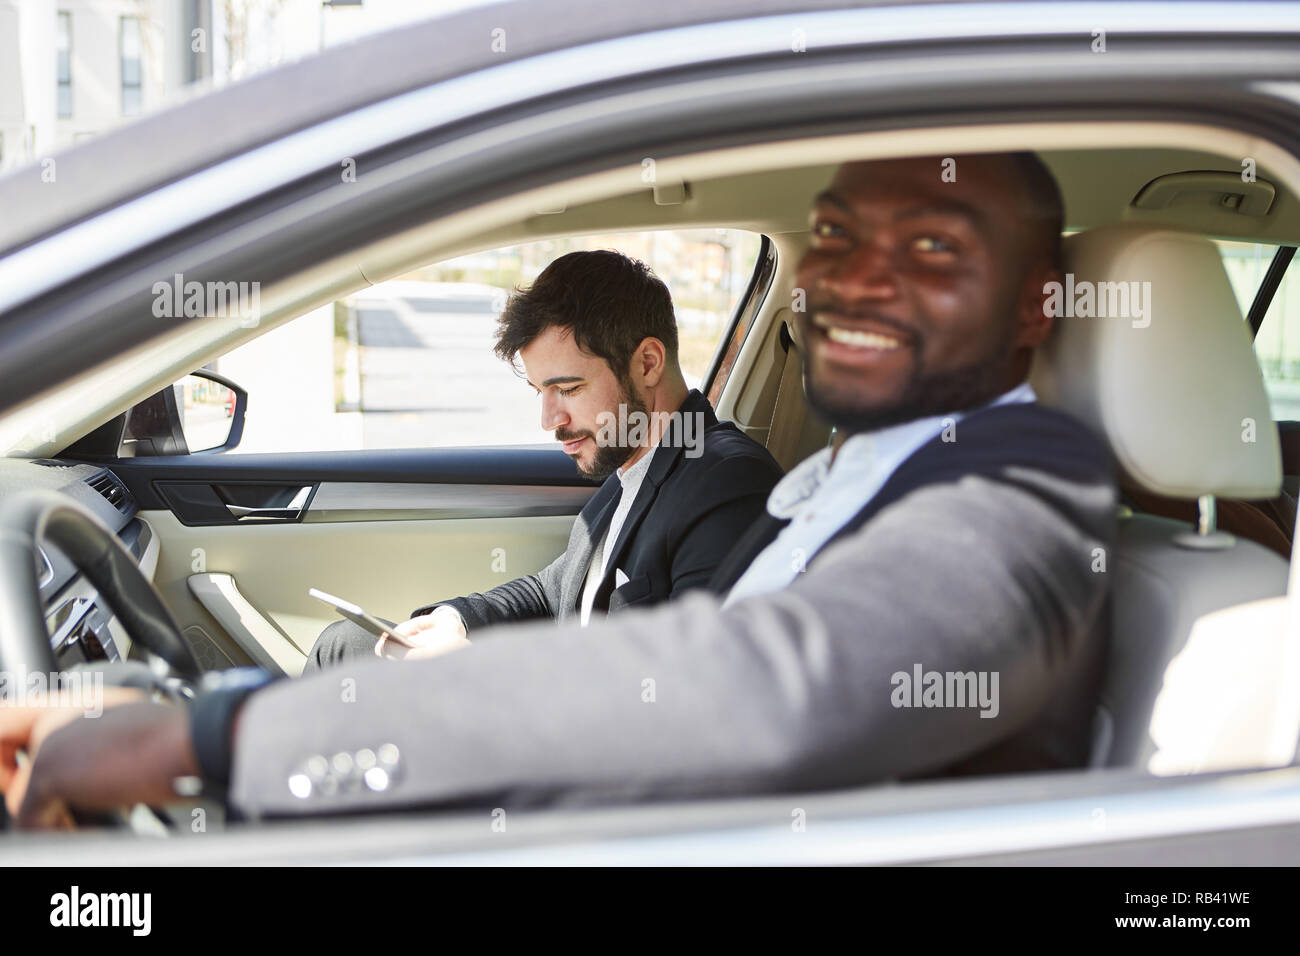 Deux personnes dans l'auto en voyage d'affaires ou sur le chemin de l'office Banque D'Images